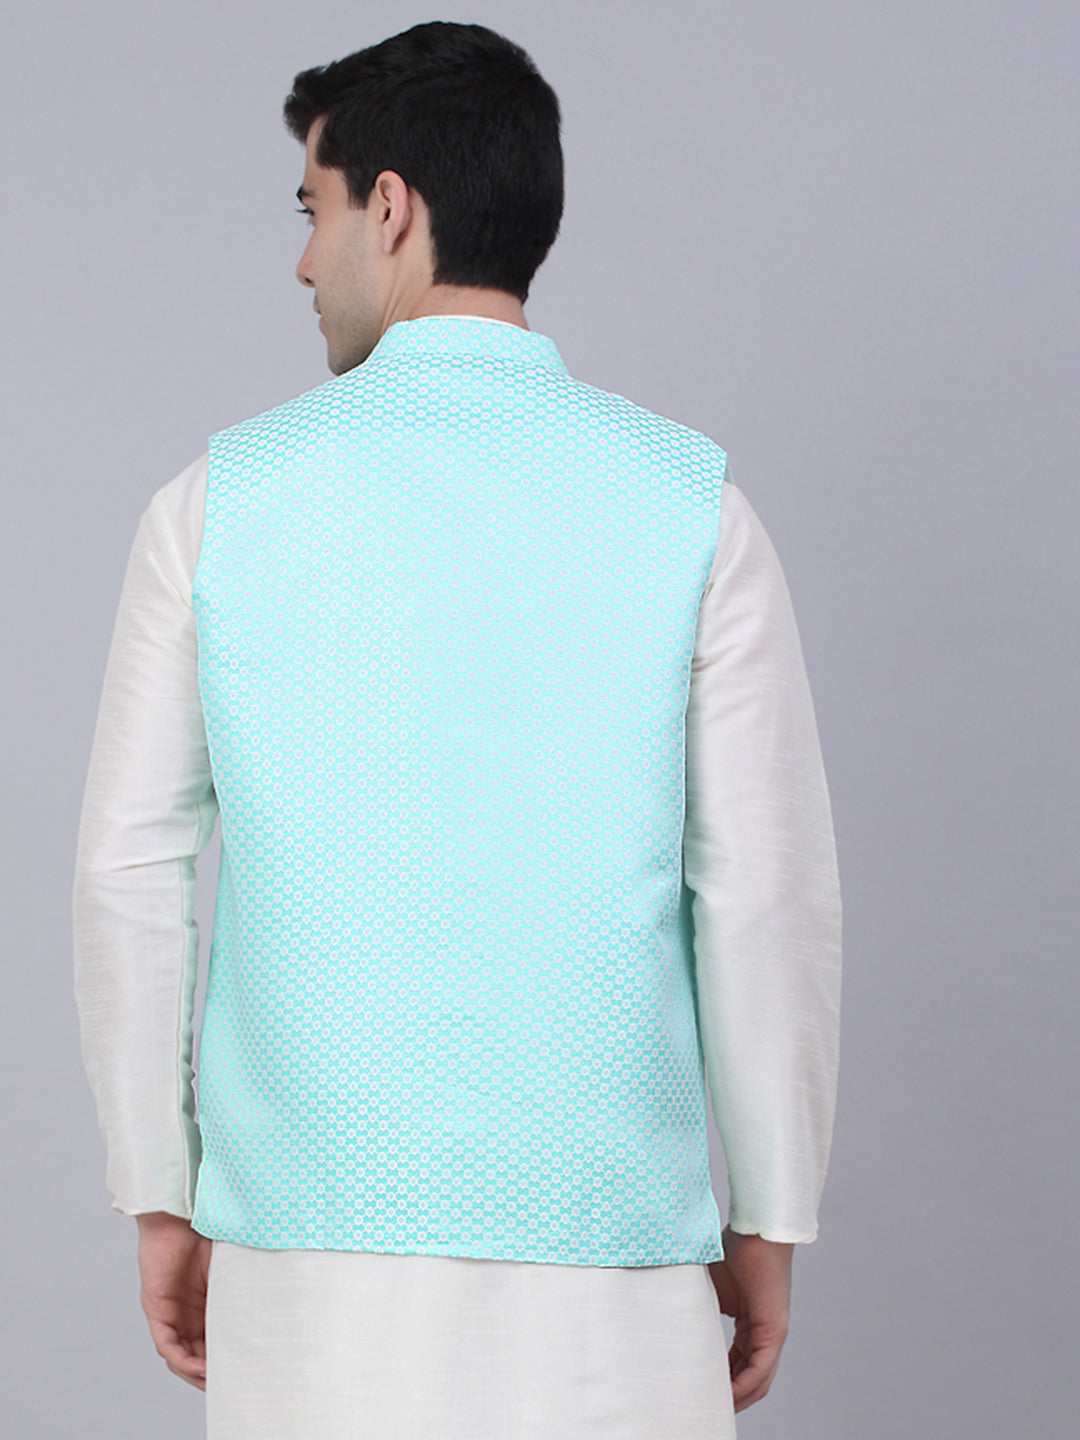 Jompers Men's Sky Blue Woven Design Waistcoats - Distacart